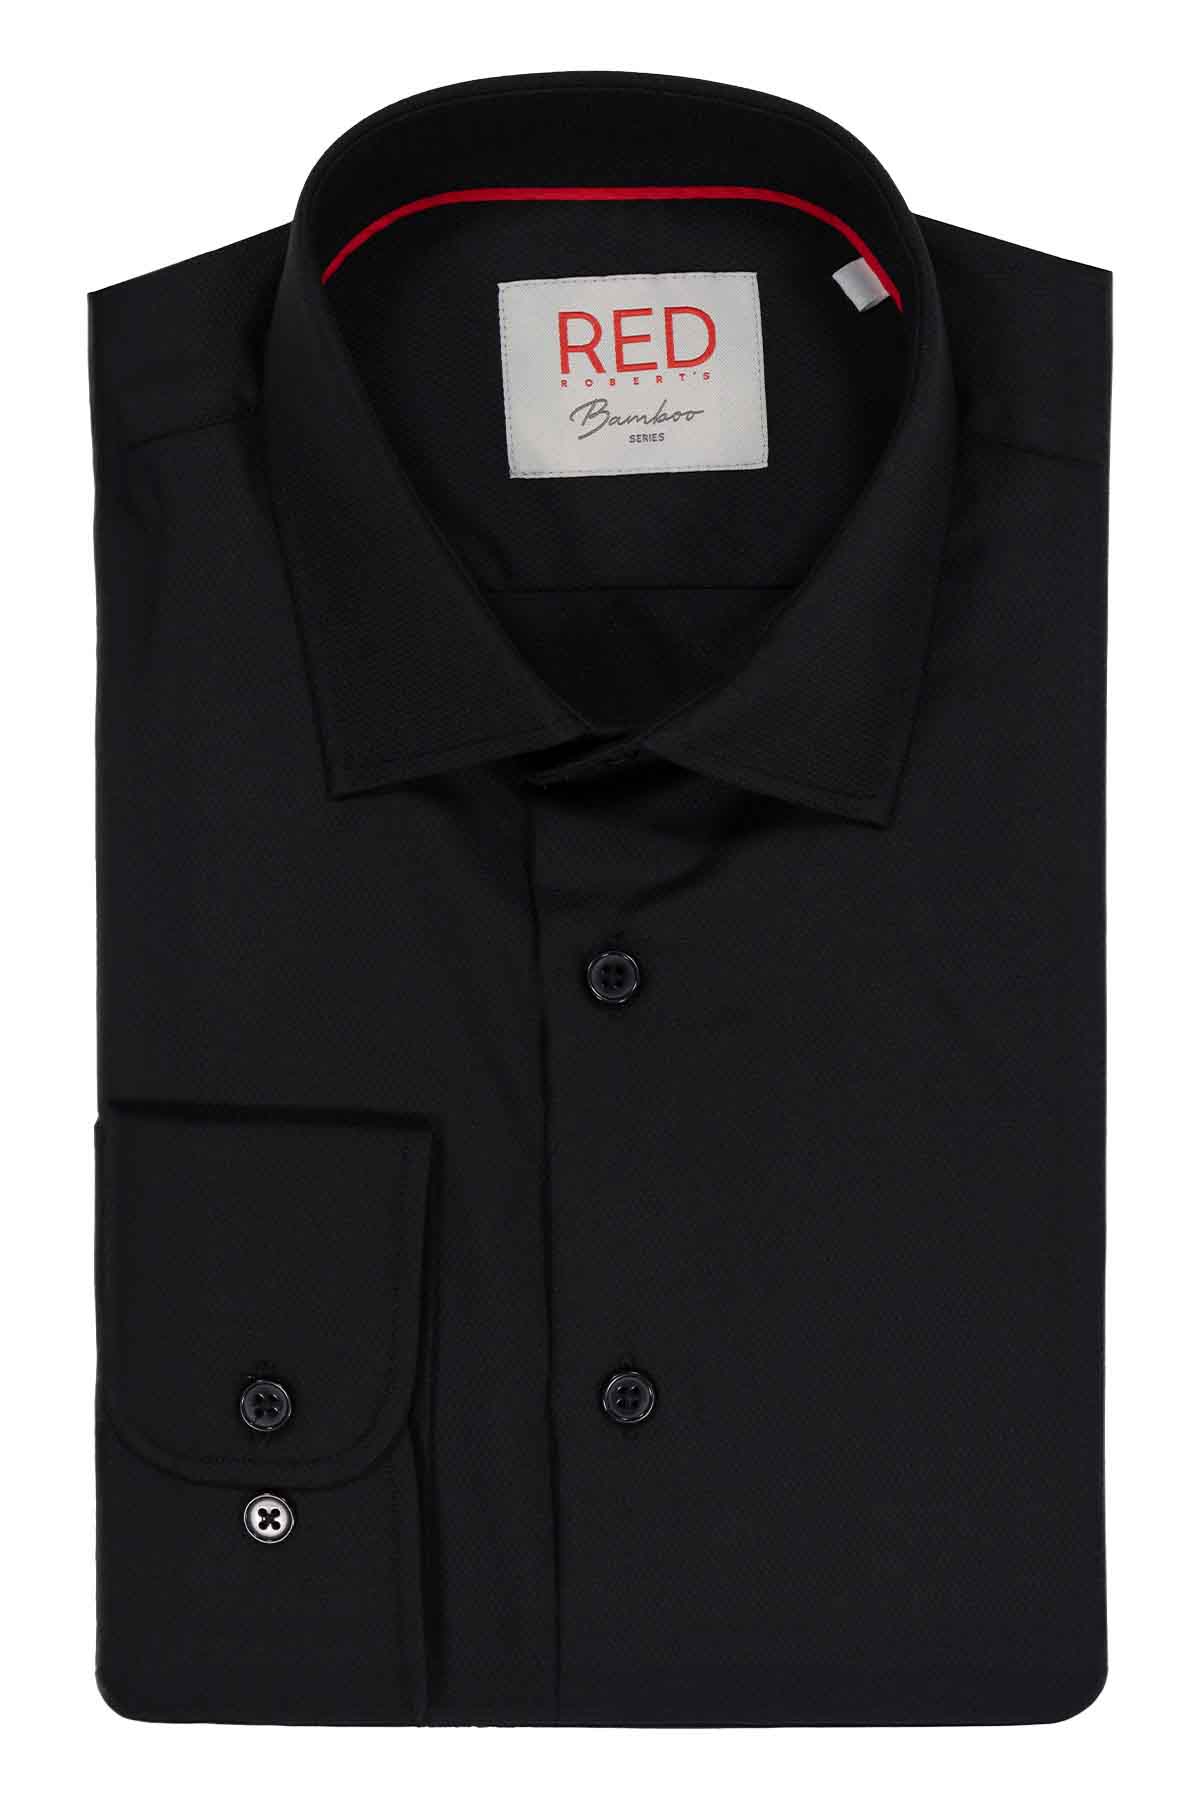 Camisa Vestir BAMBOO Roberts Red Negro Slim Fit